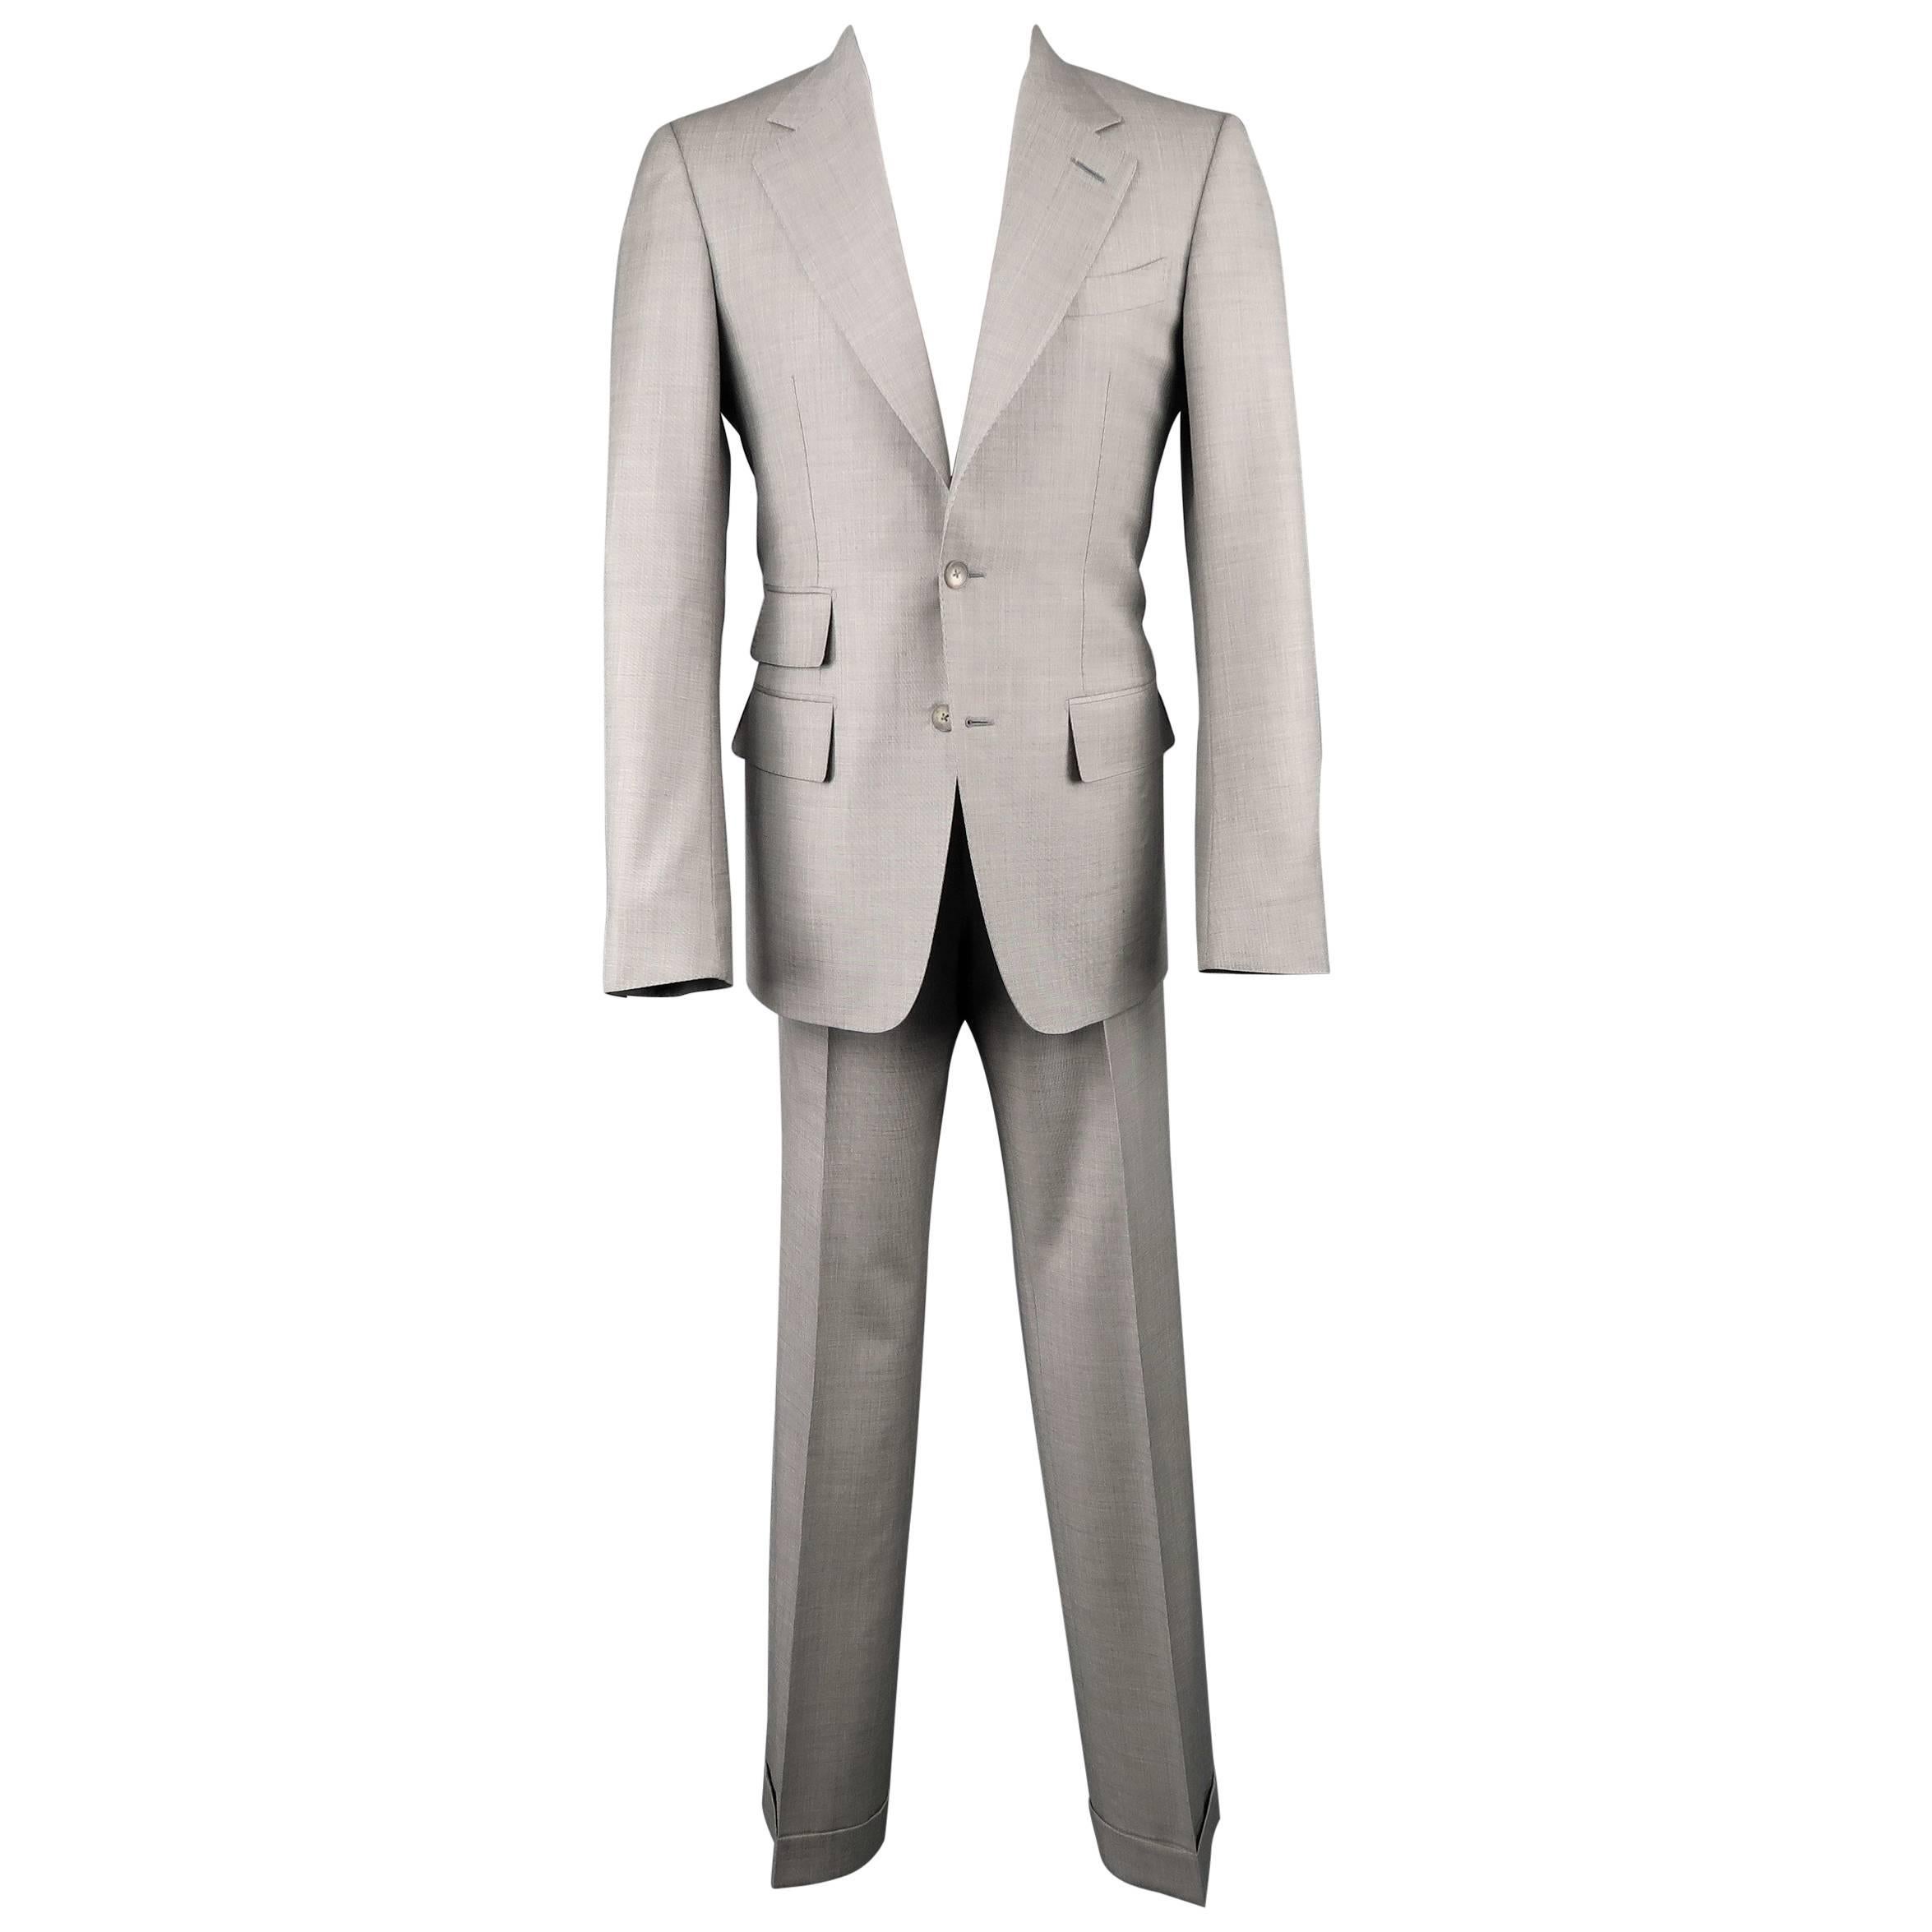 Herren-Anzug aus hellgrauer Wolle mit 2 Knöpfen und Revers von Tom Ford